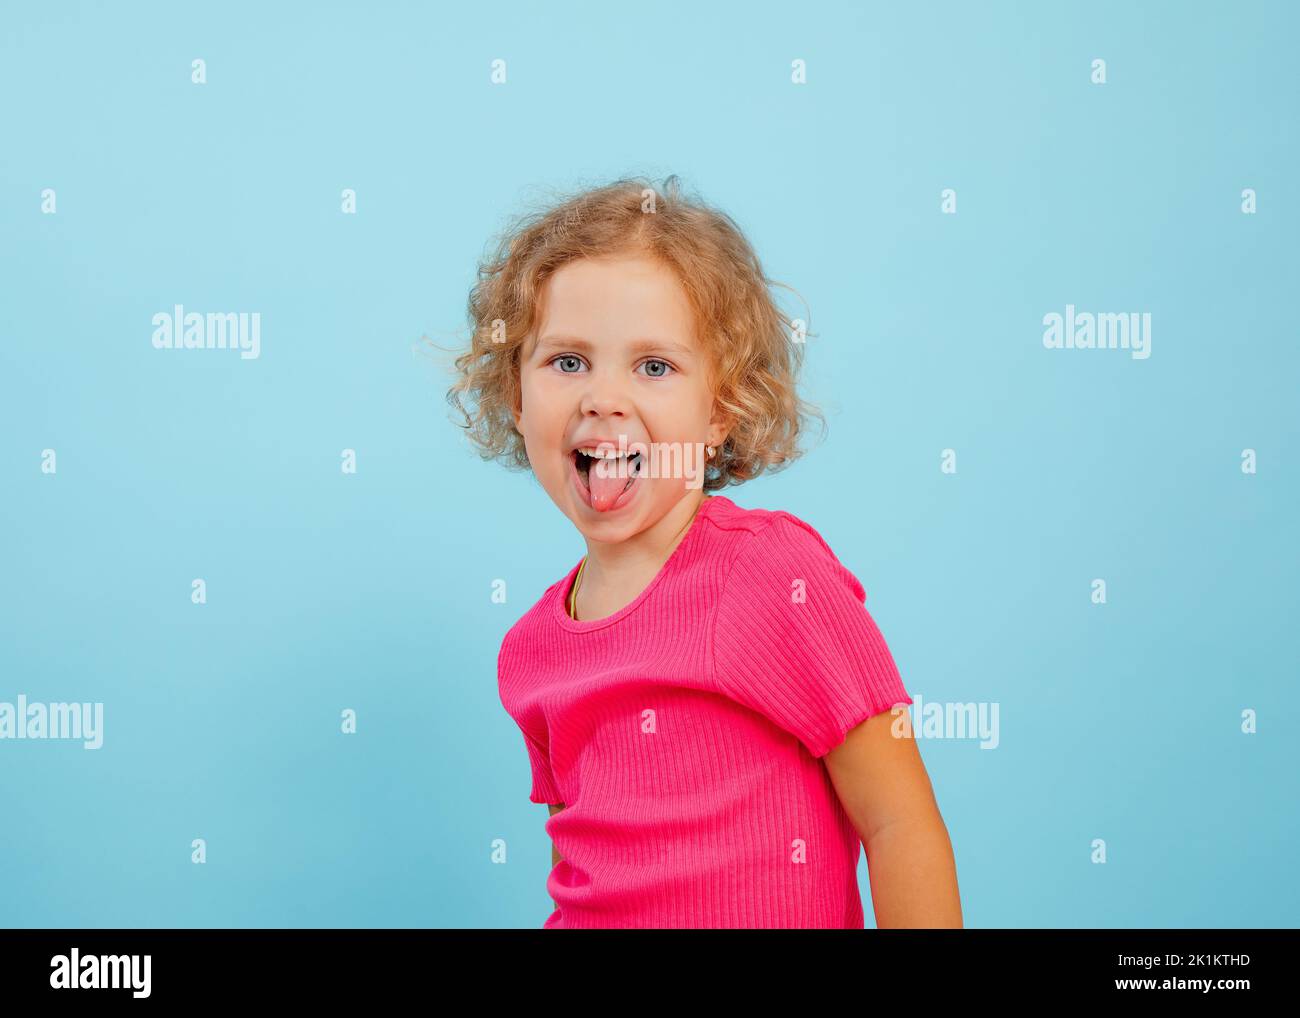 Portrait d'une petite fille heureuse à yeux bleus avec des cheveux bouclés, montrant la langue, la grimace taquinerie sur fond bleu. Banque D'Images